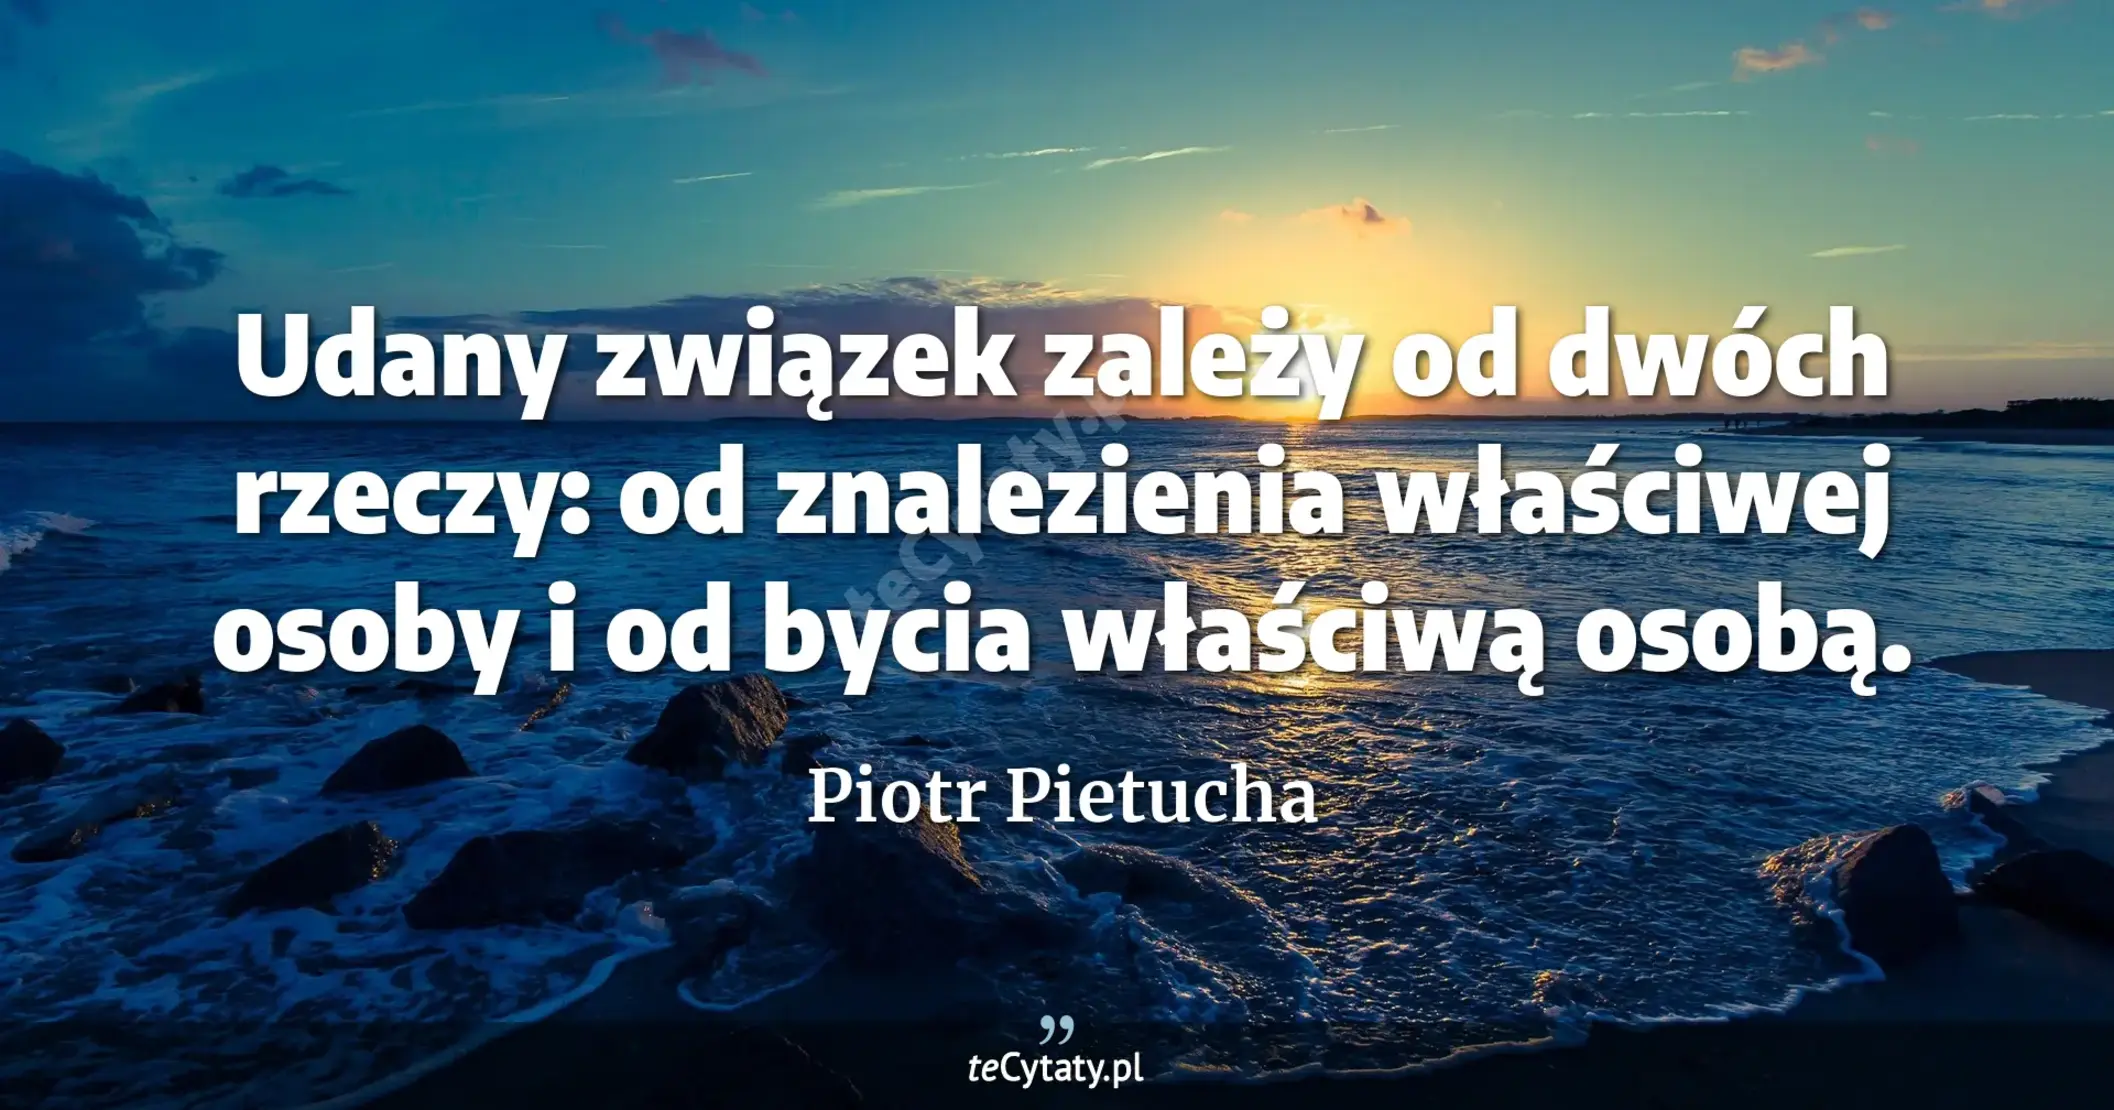 Udany związek zależy od dwóch rzeczy: od znalezienia właściwej osoby i od bycia właściwą osobą. - Piotr Pietucha